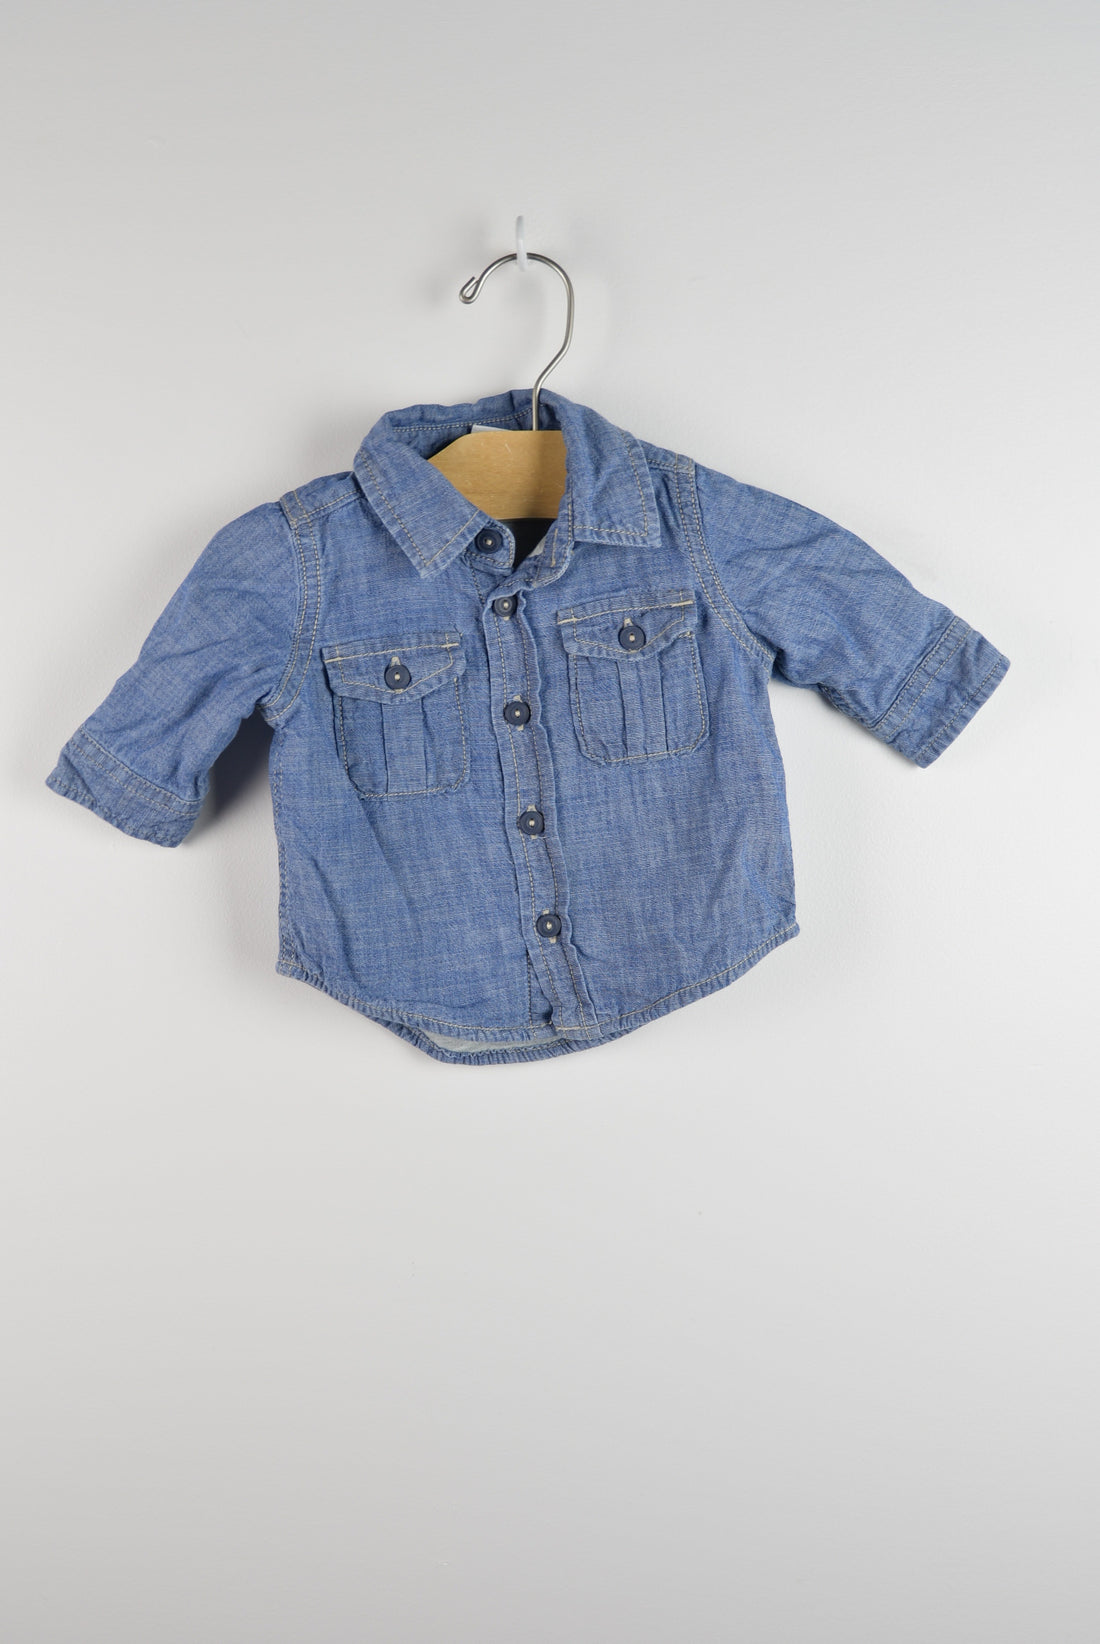 Gap Cotton Lined Chambray Shirt (0-3M)